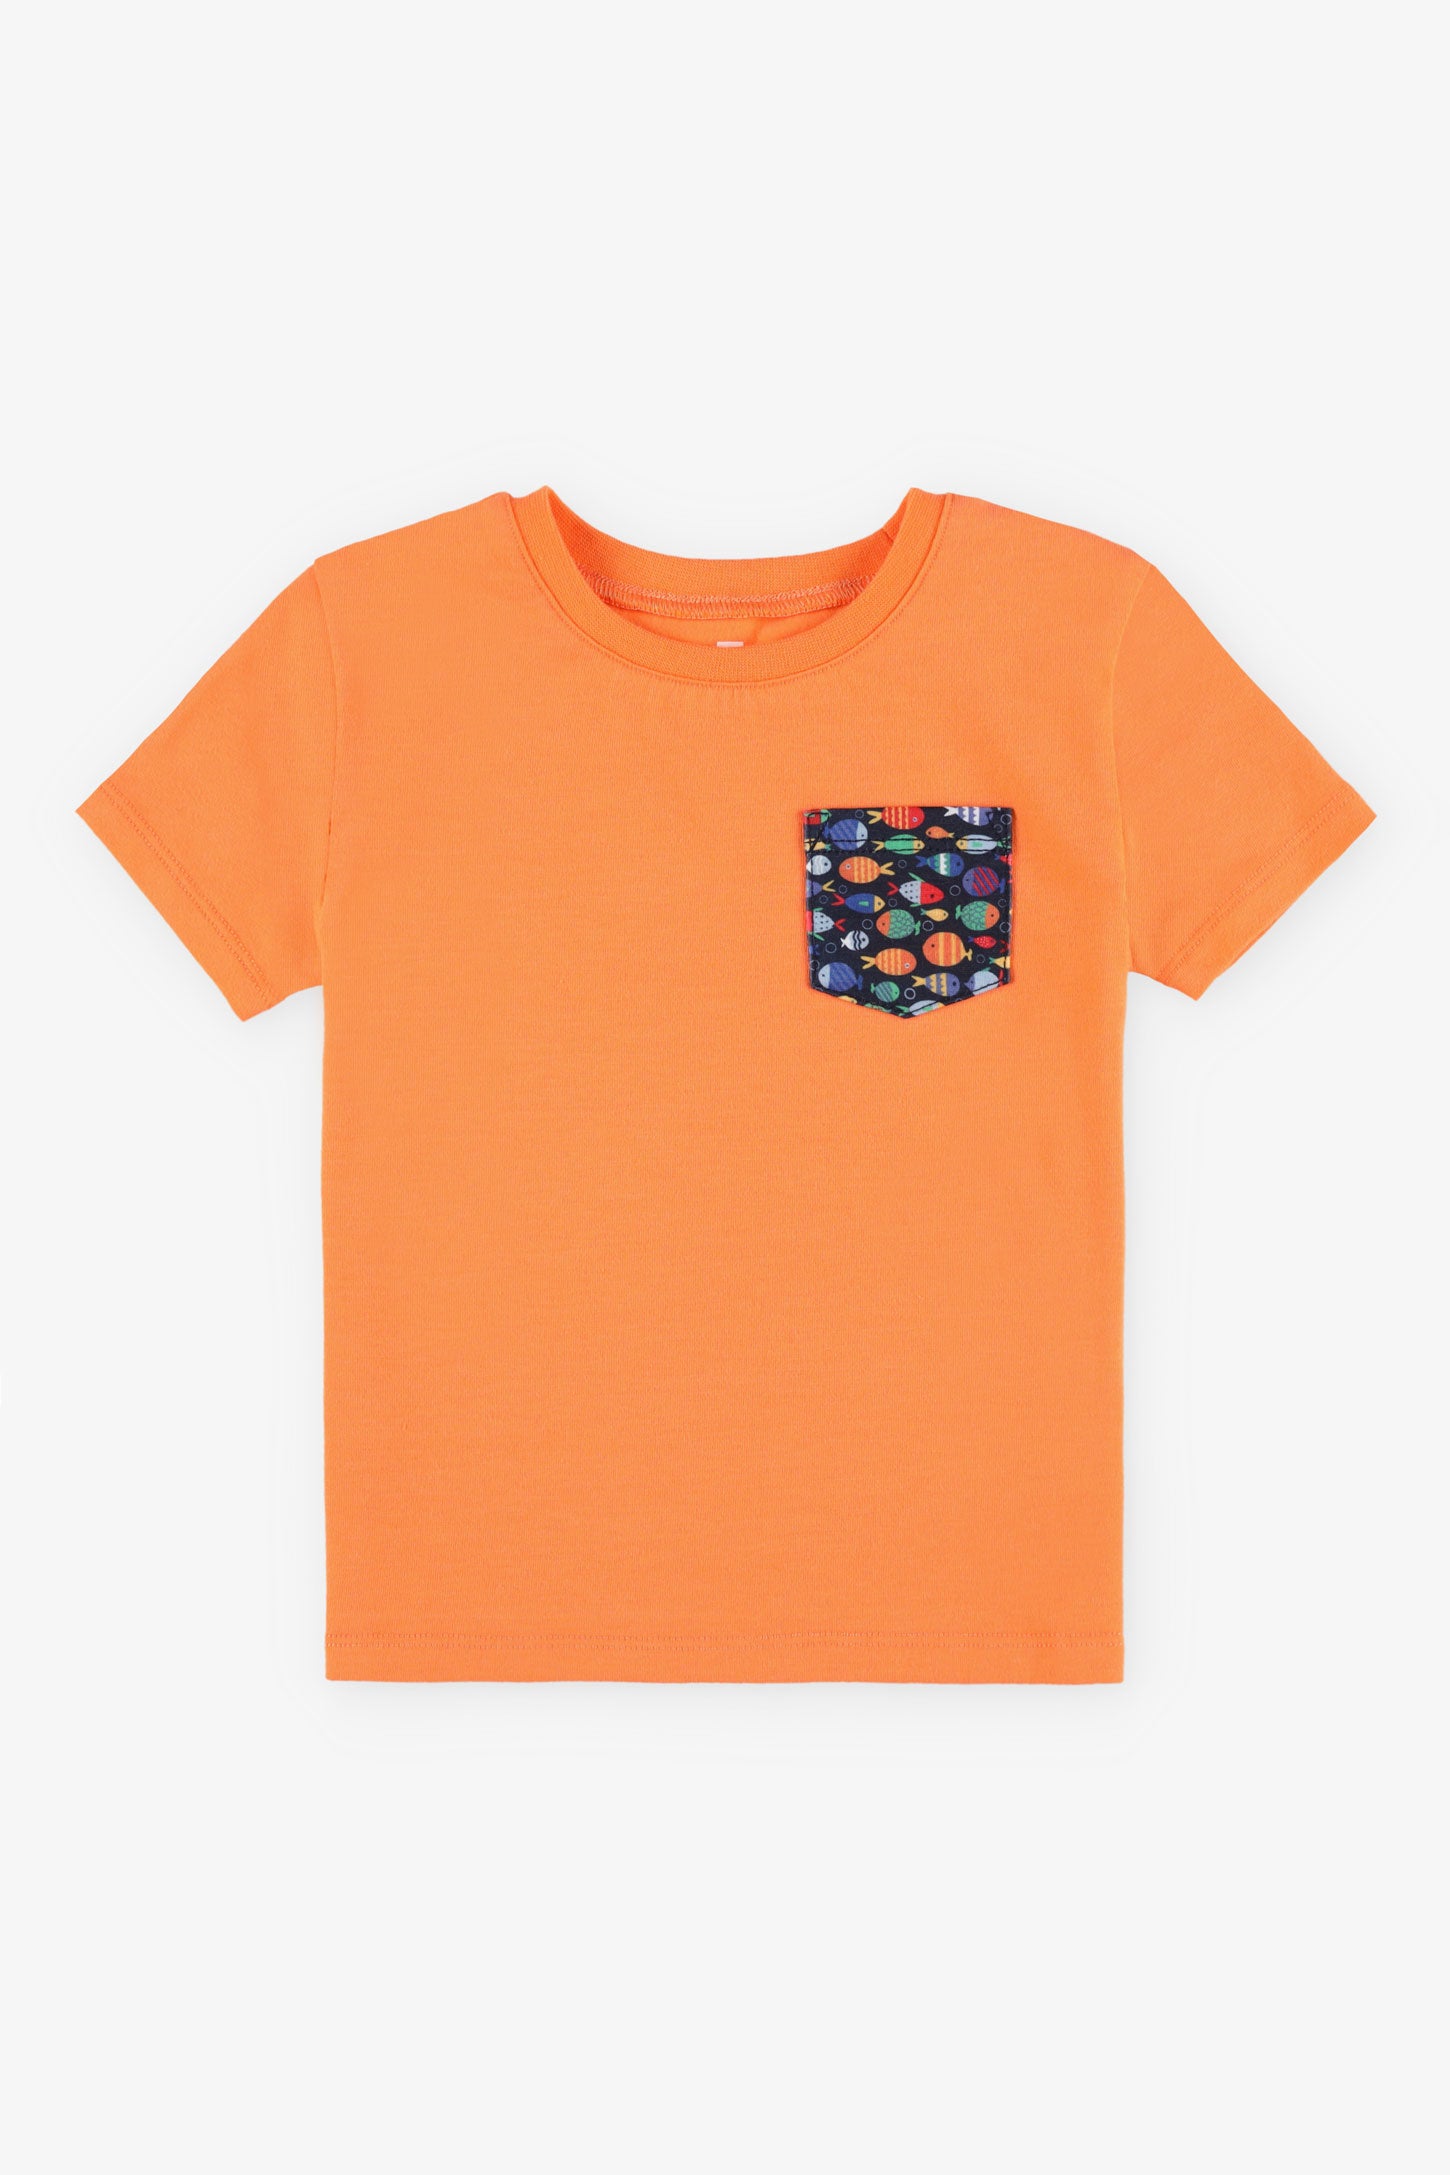 T-shirt rond coupe droite coton, 2T-3T, 2/15$ - Bébé garçon && ORANGE